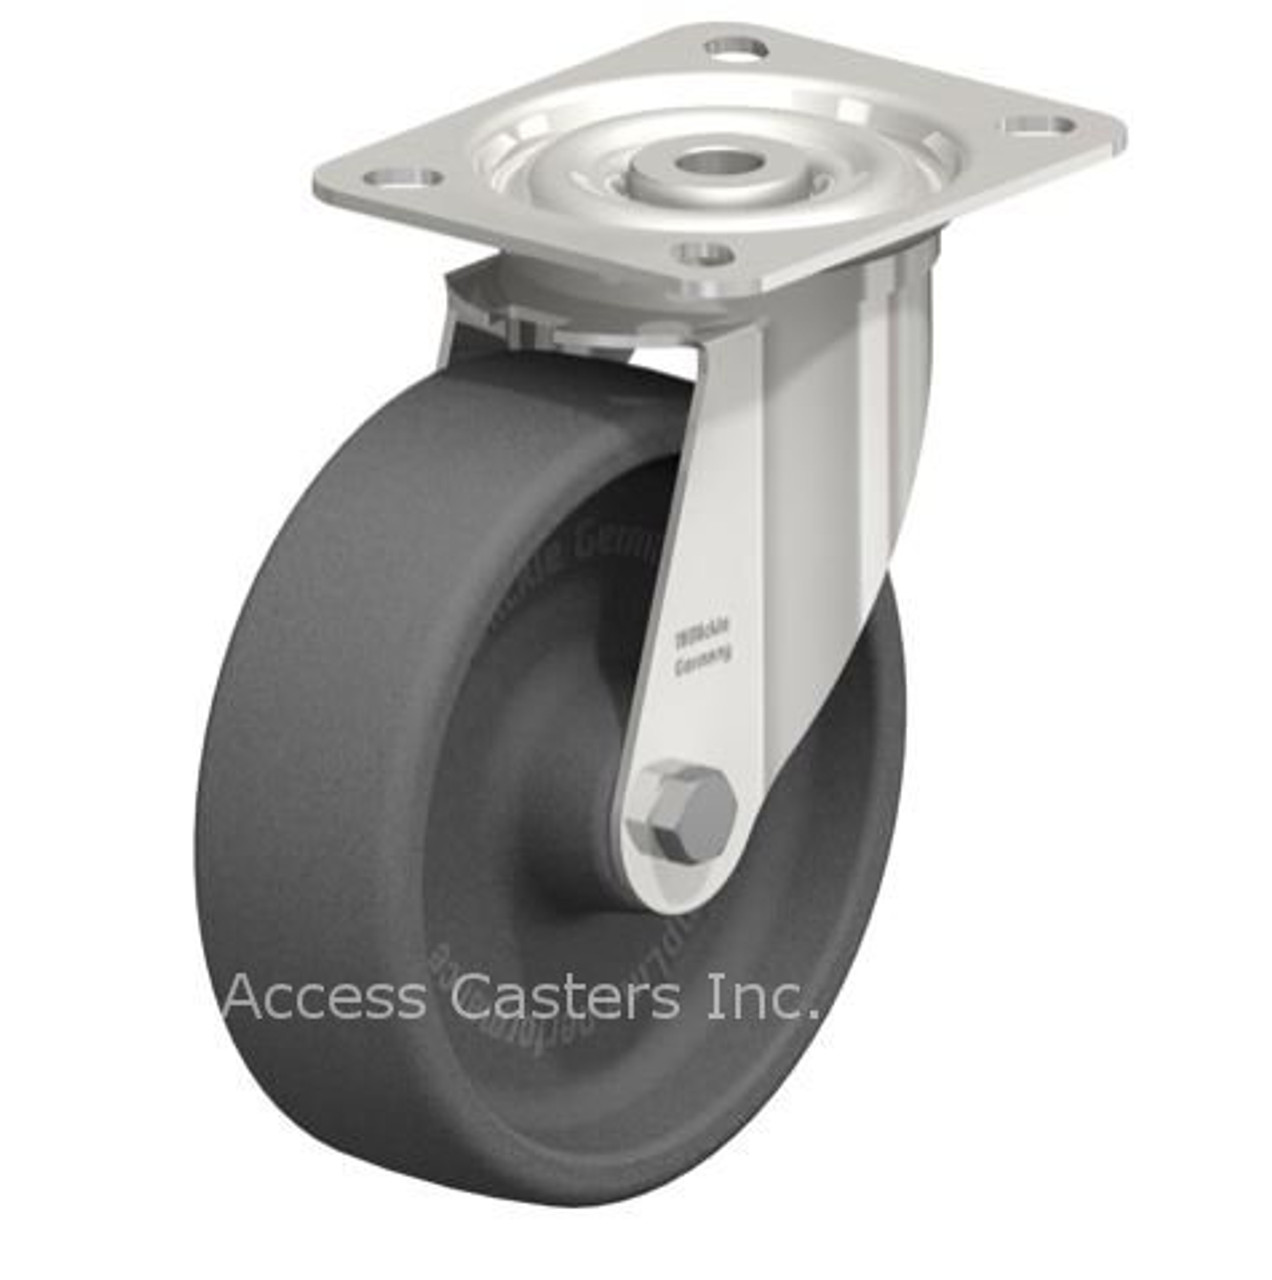 LIX-POHI 125G-OF-XAT Blickle 5" Swivel Caster POHI Wheel Plate Plain Bore